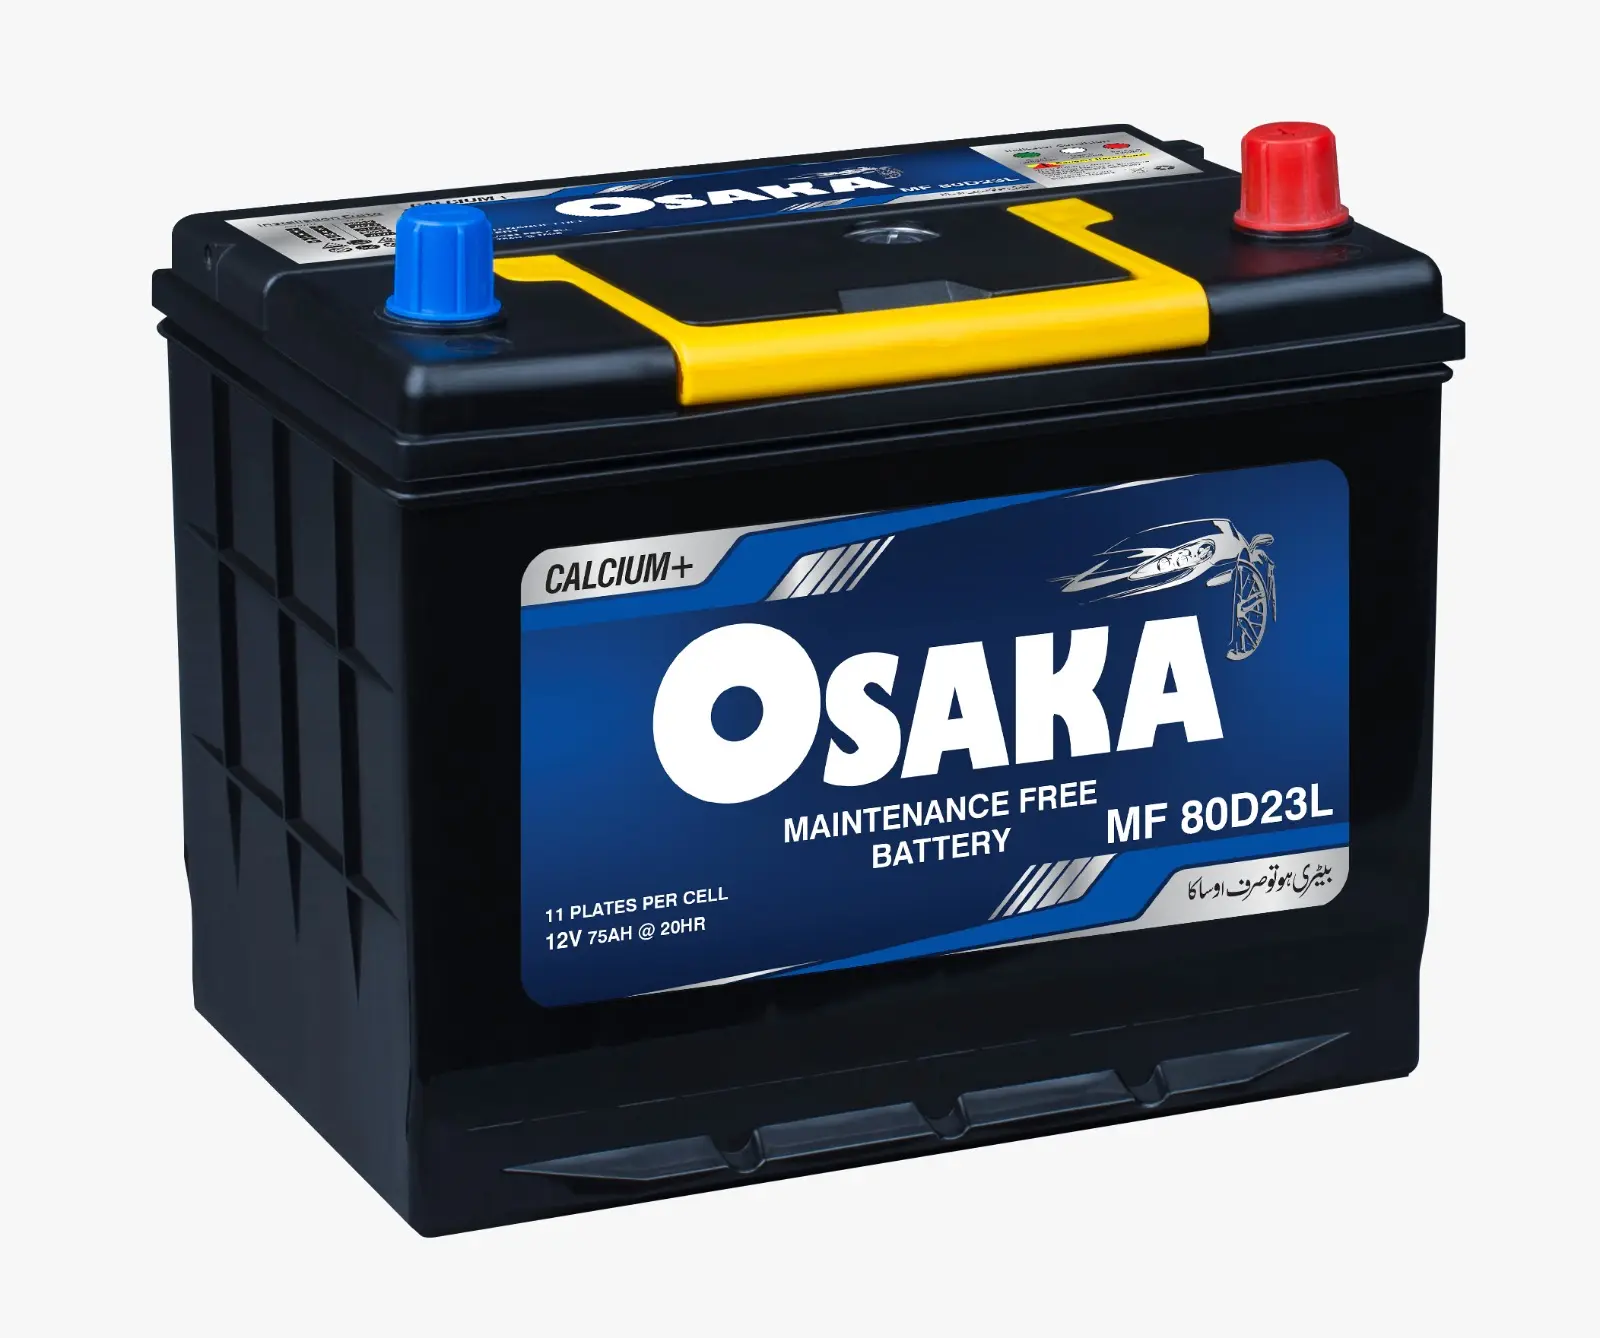 Osaka Maintenance Free Batteries